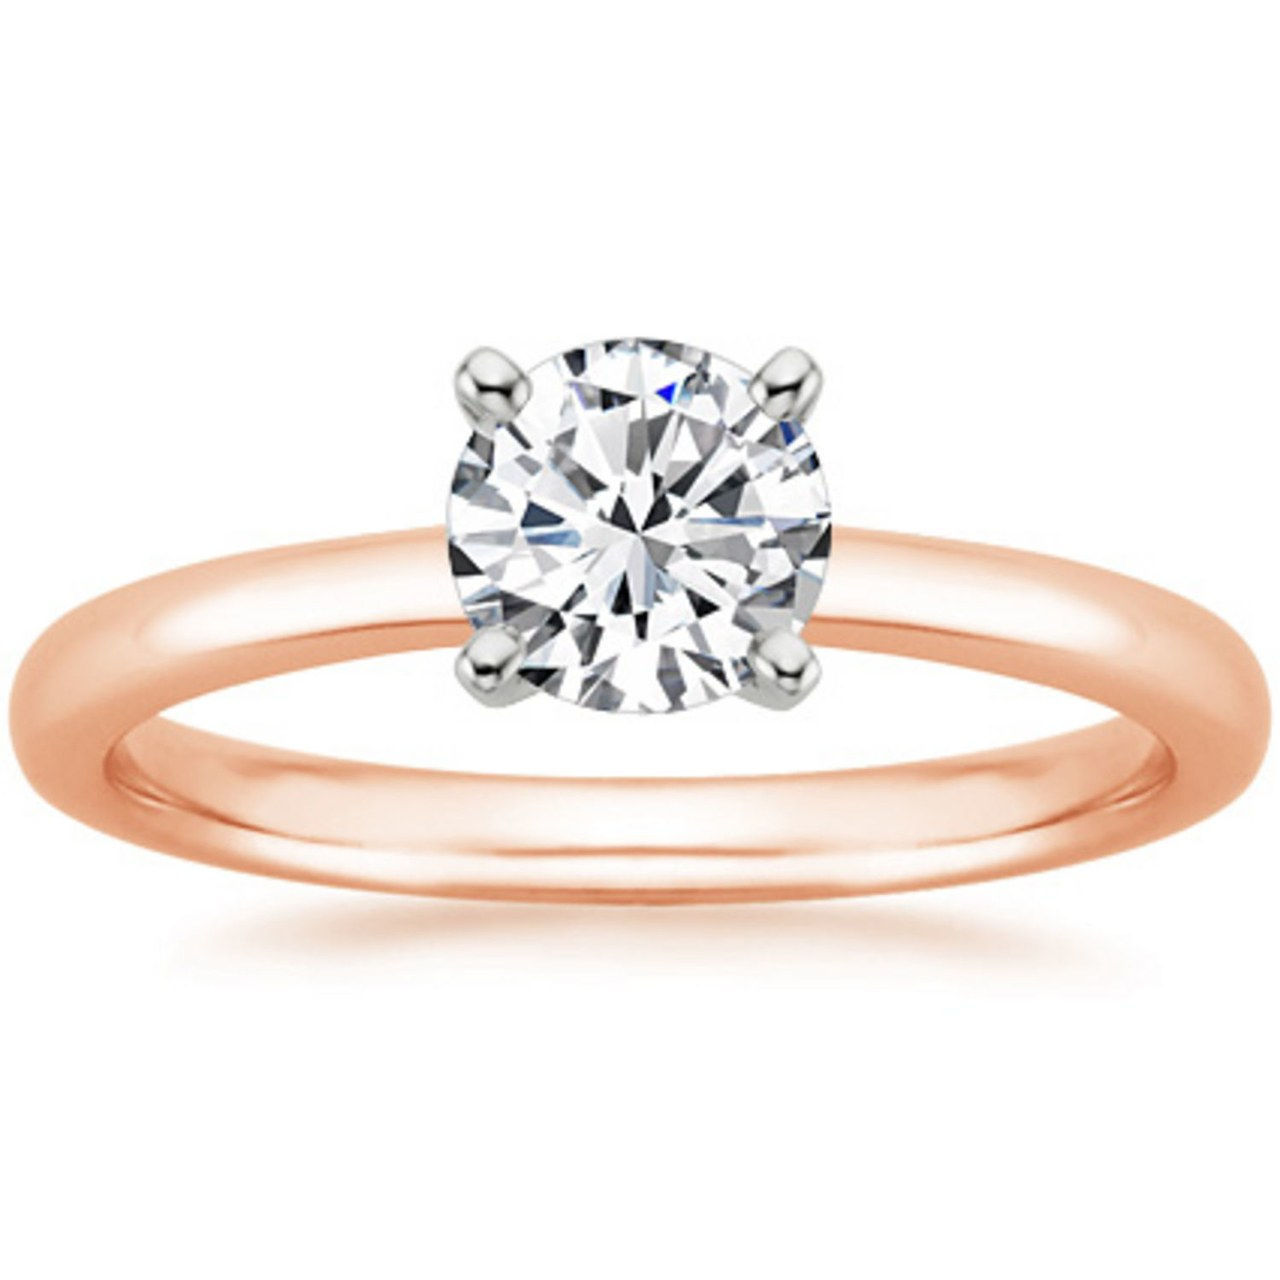 2 lauren conrad engagement ring william tell celebrity weddings 1013